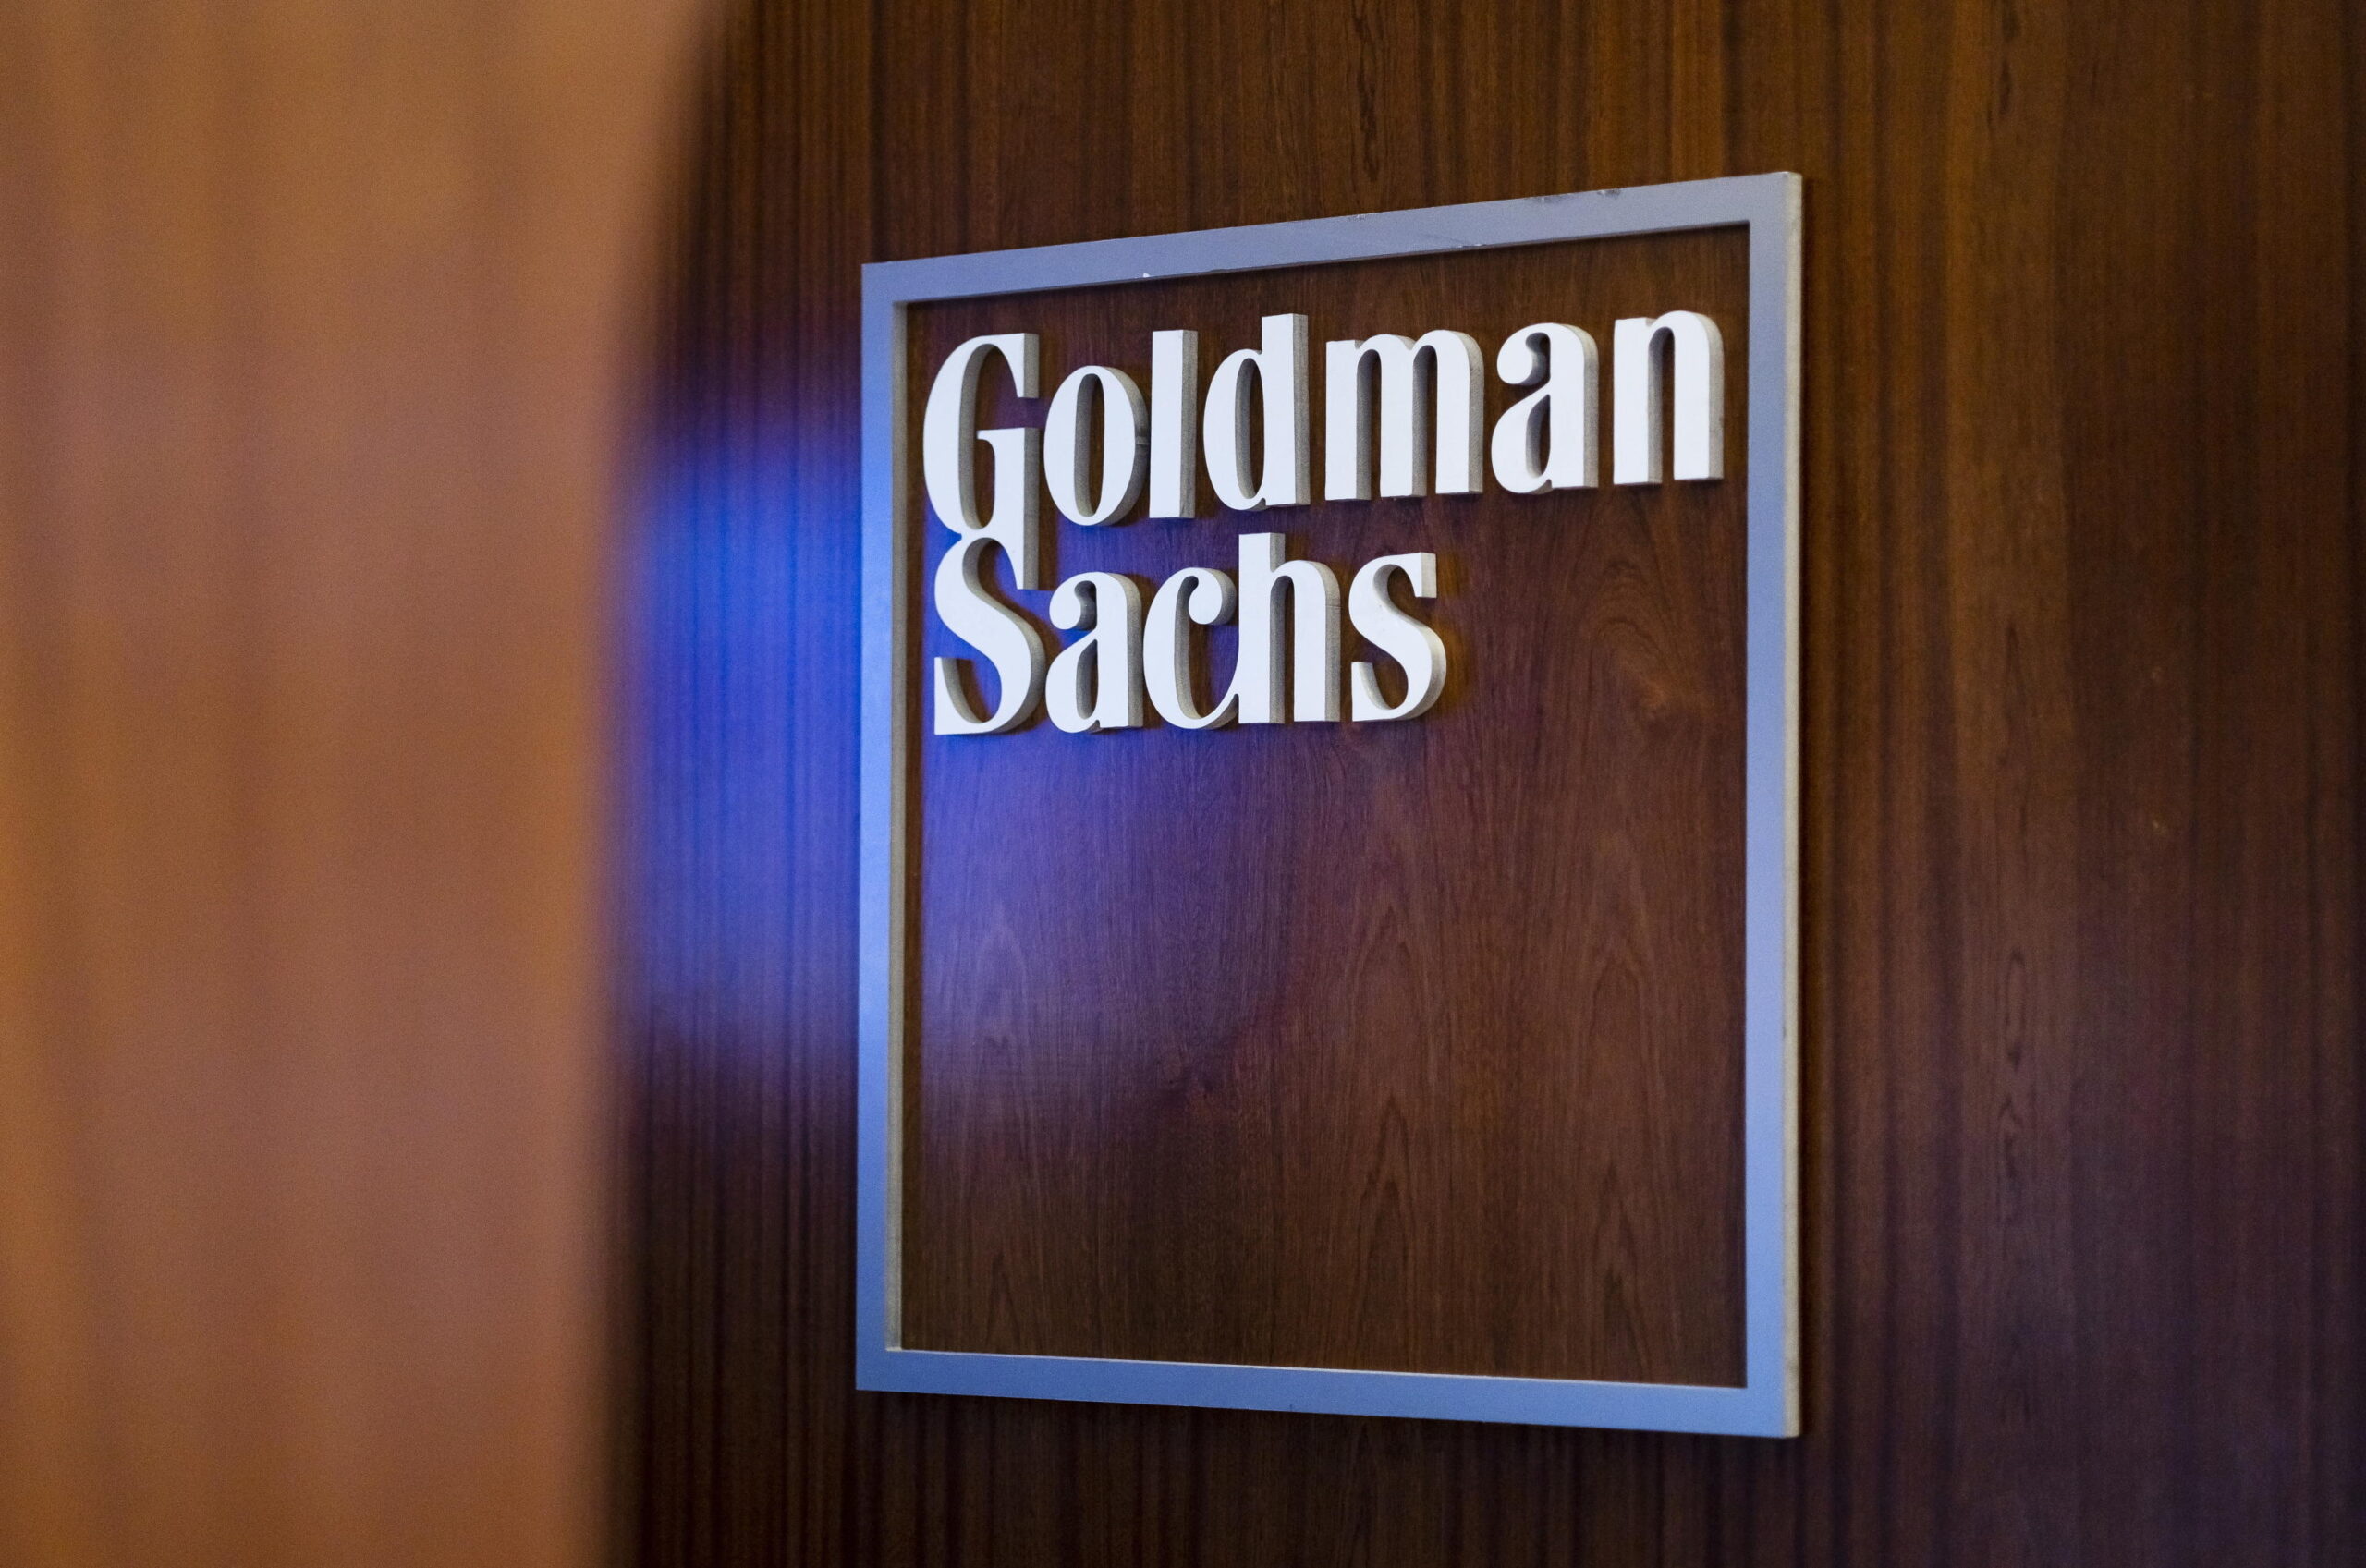 Lavoro, in arrivo il terzo round di licenziamenti in Goldman Sachs